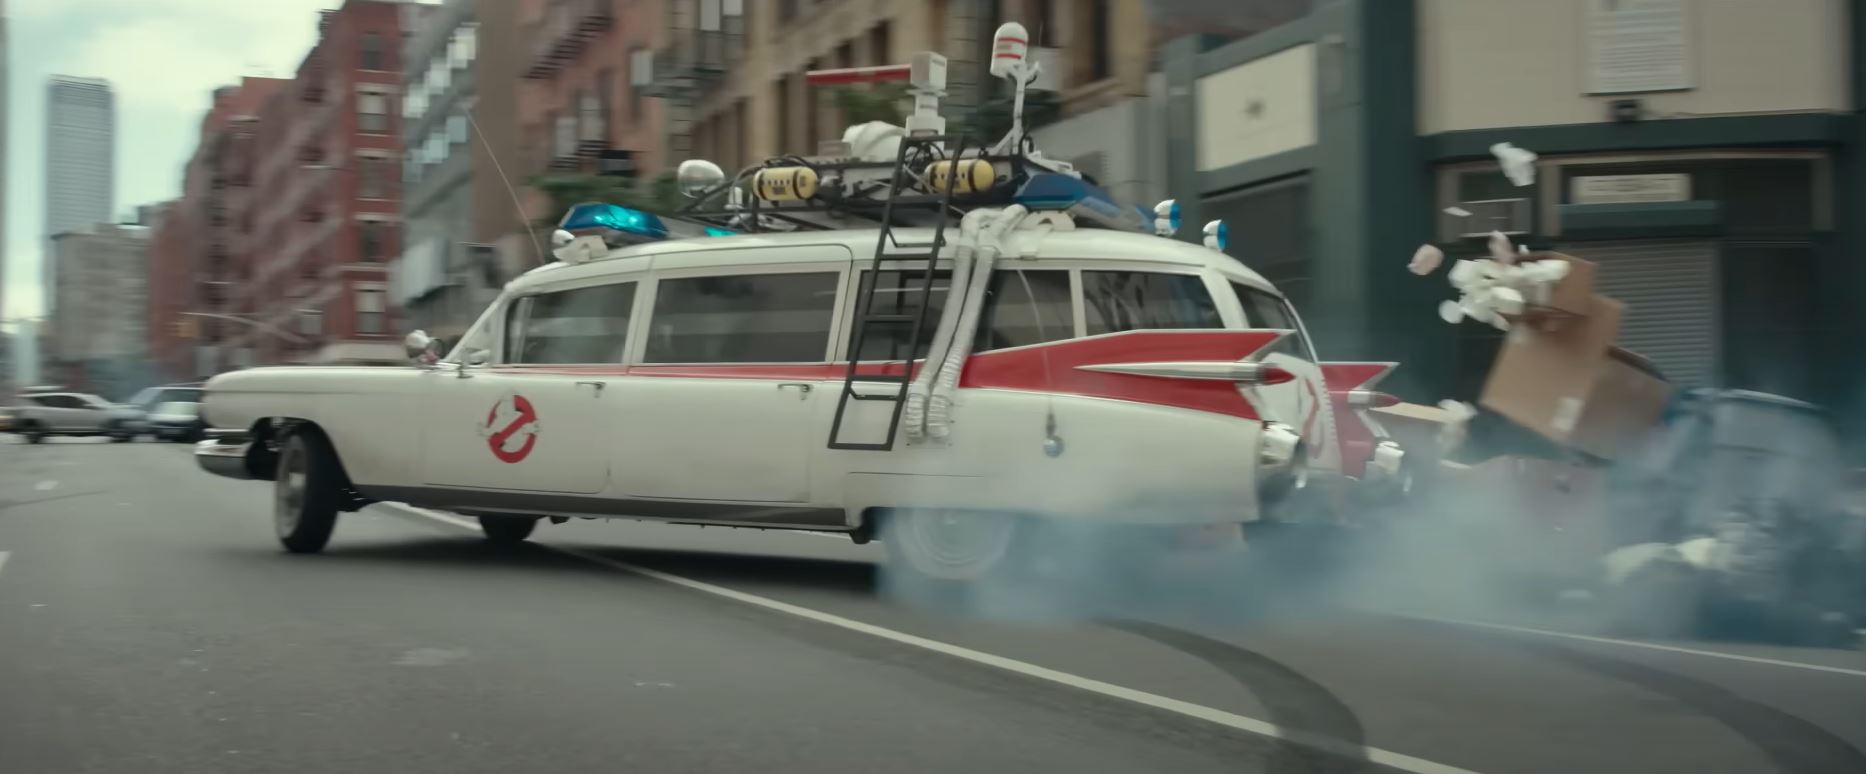 Die Ghostbusters begeben sich in ihr Ektomobil auf die Jagd nach lästigen Ghulen